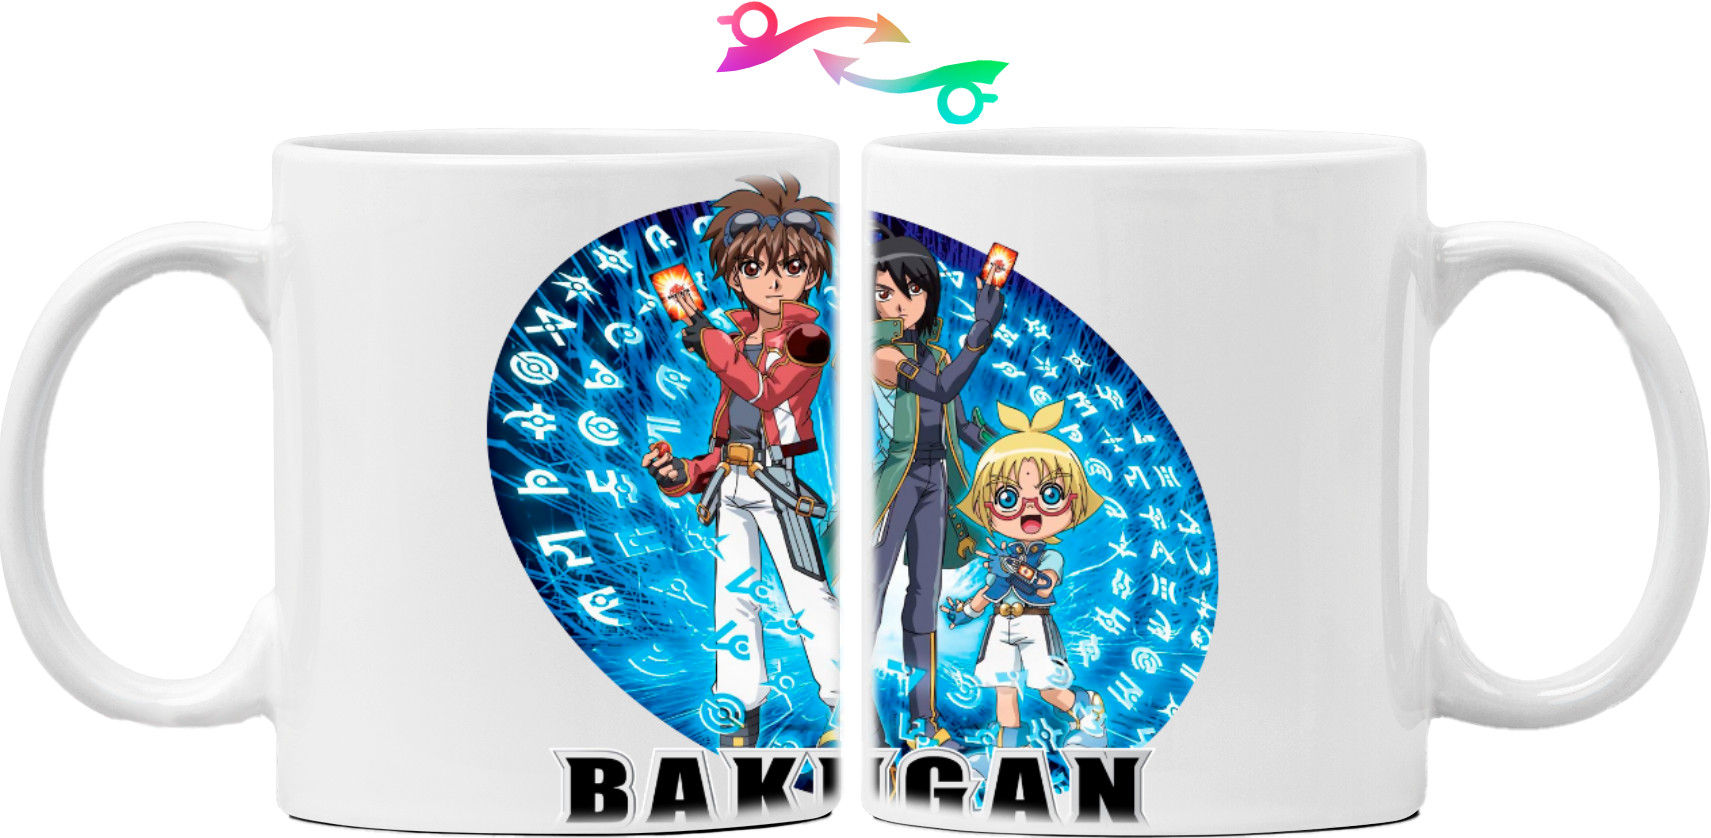 Bakugan / Bakugan 3